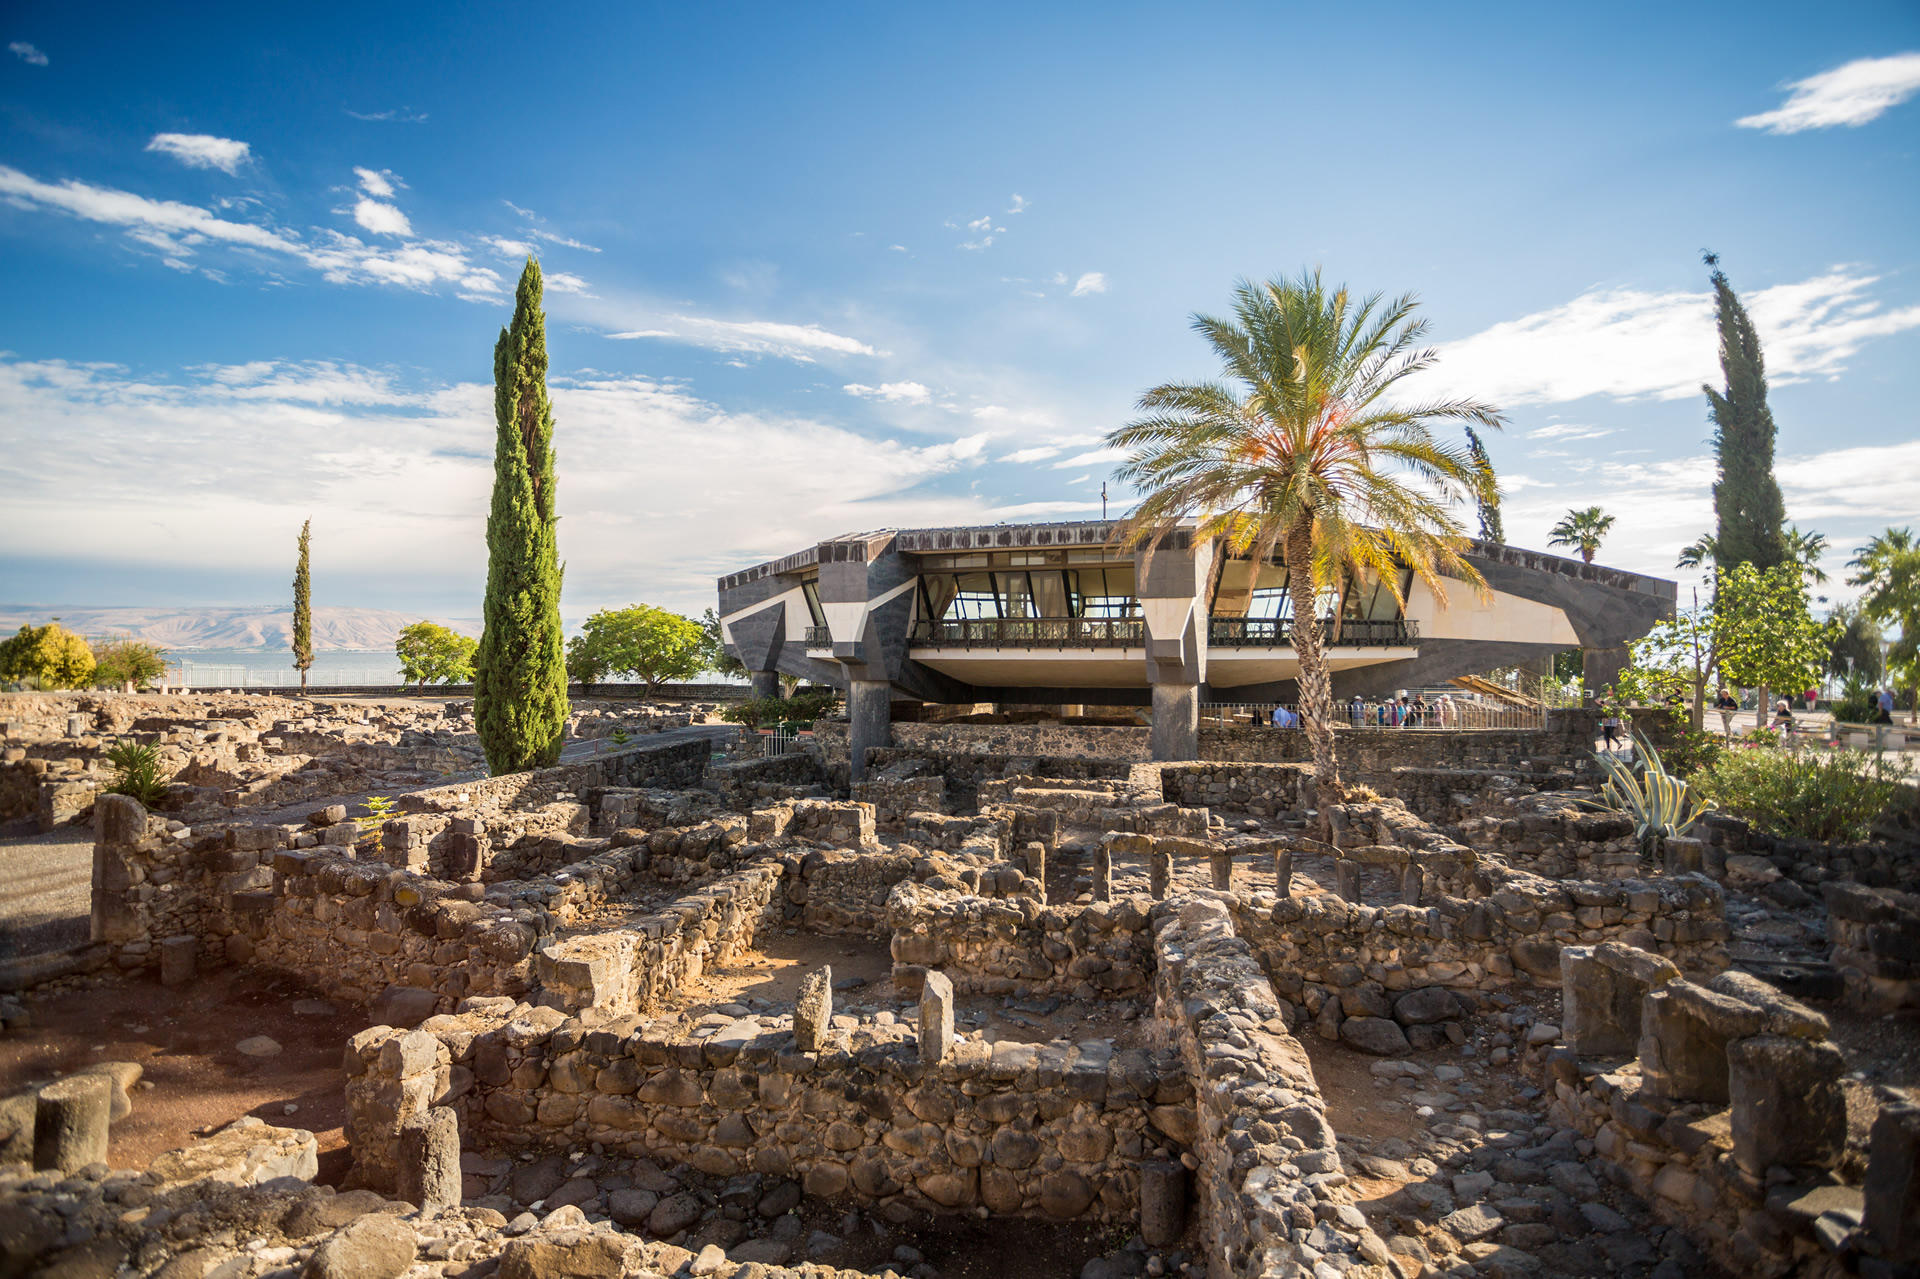 Part 4 - Capernaum